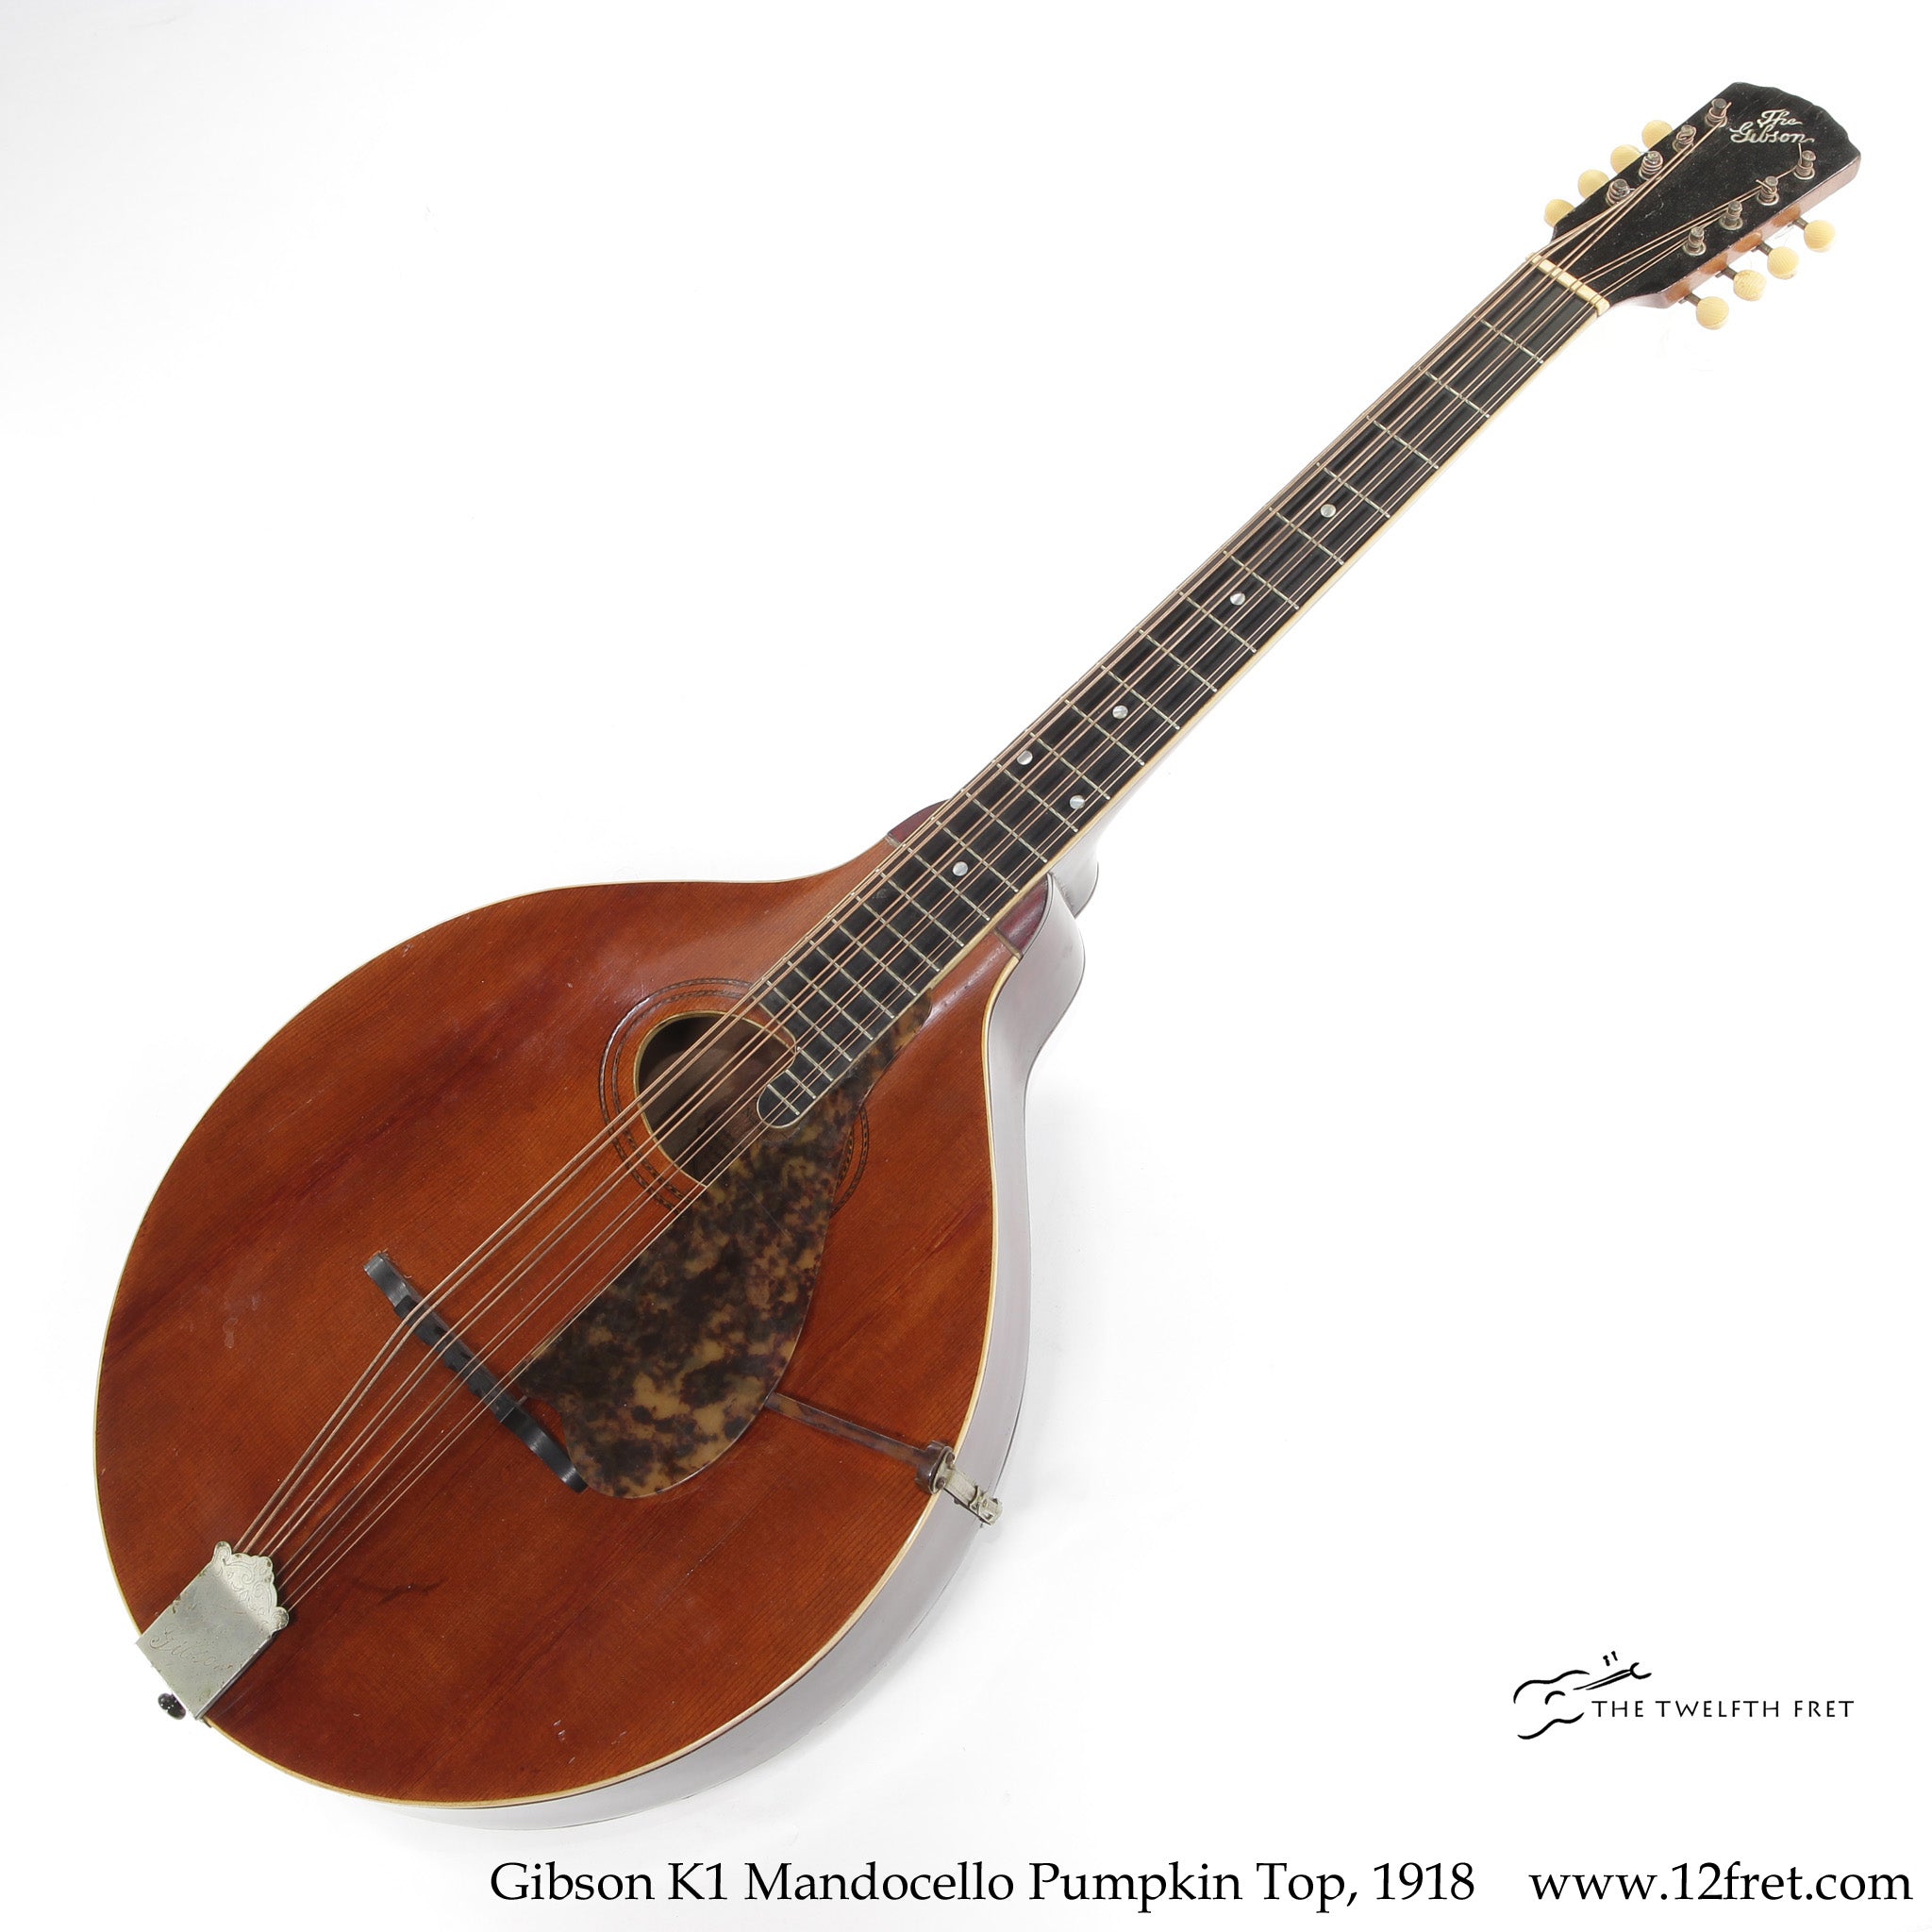 Gibson K1 Mandocello Pumpkin Top, 1918